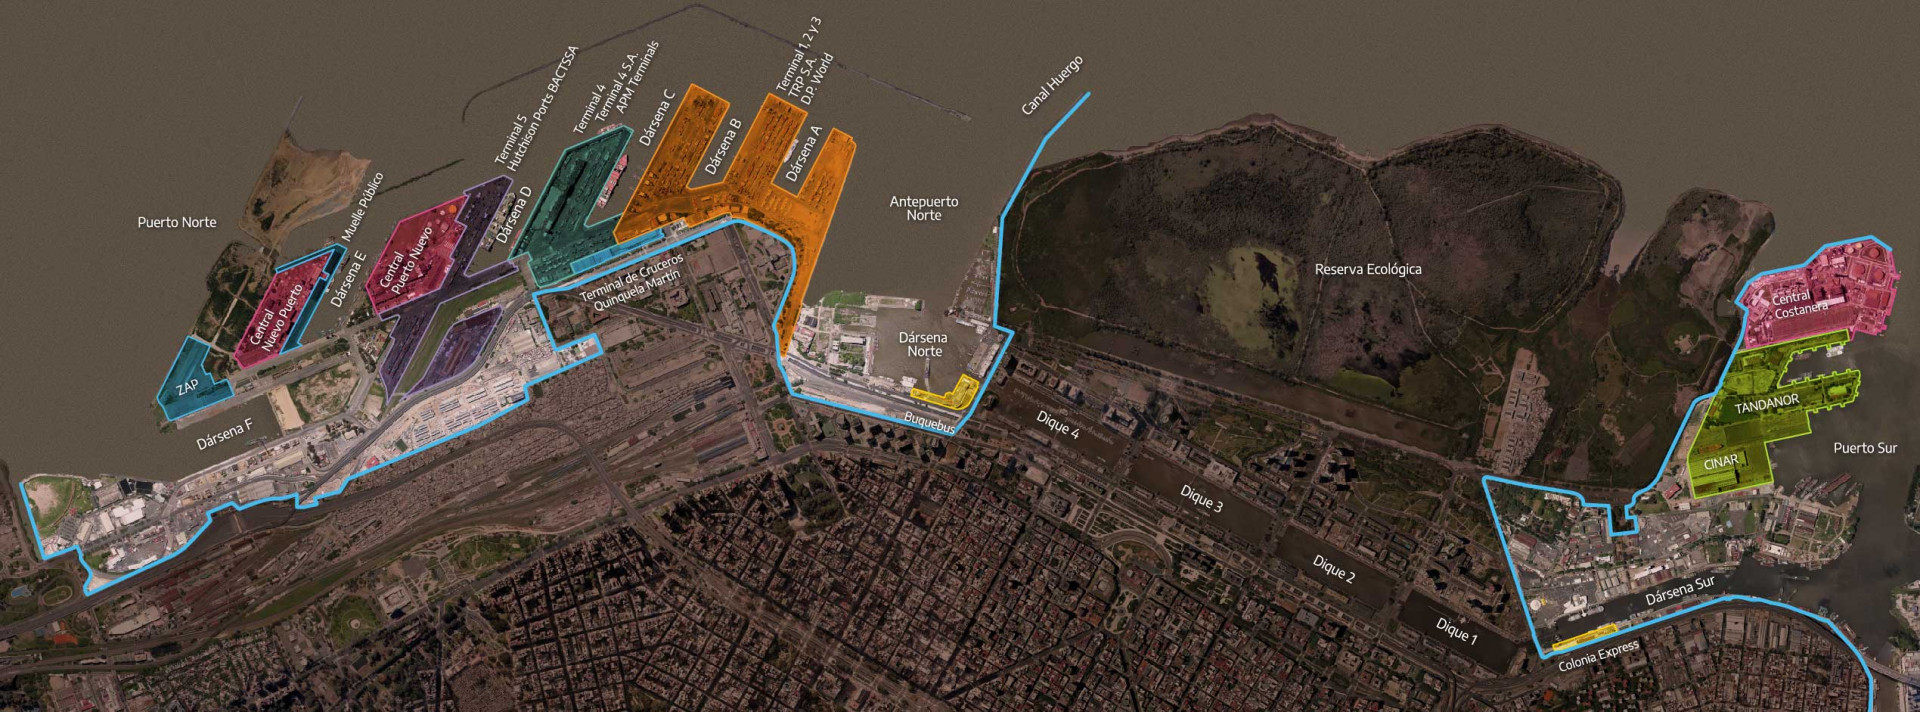 El Puerto Buenos Aires aumentó sus cargas totales y el movimiento de contenedores respecto a 2019